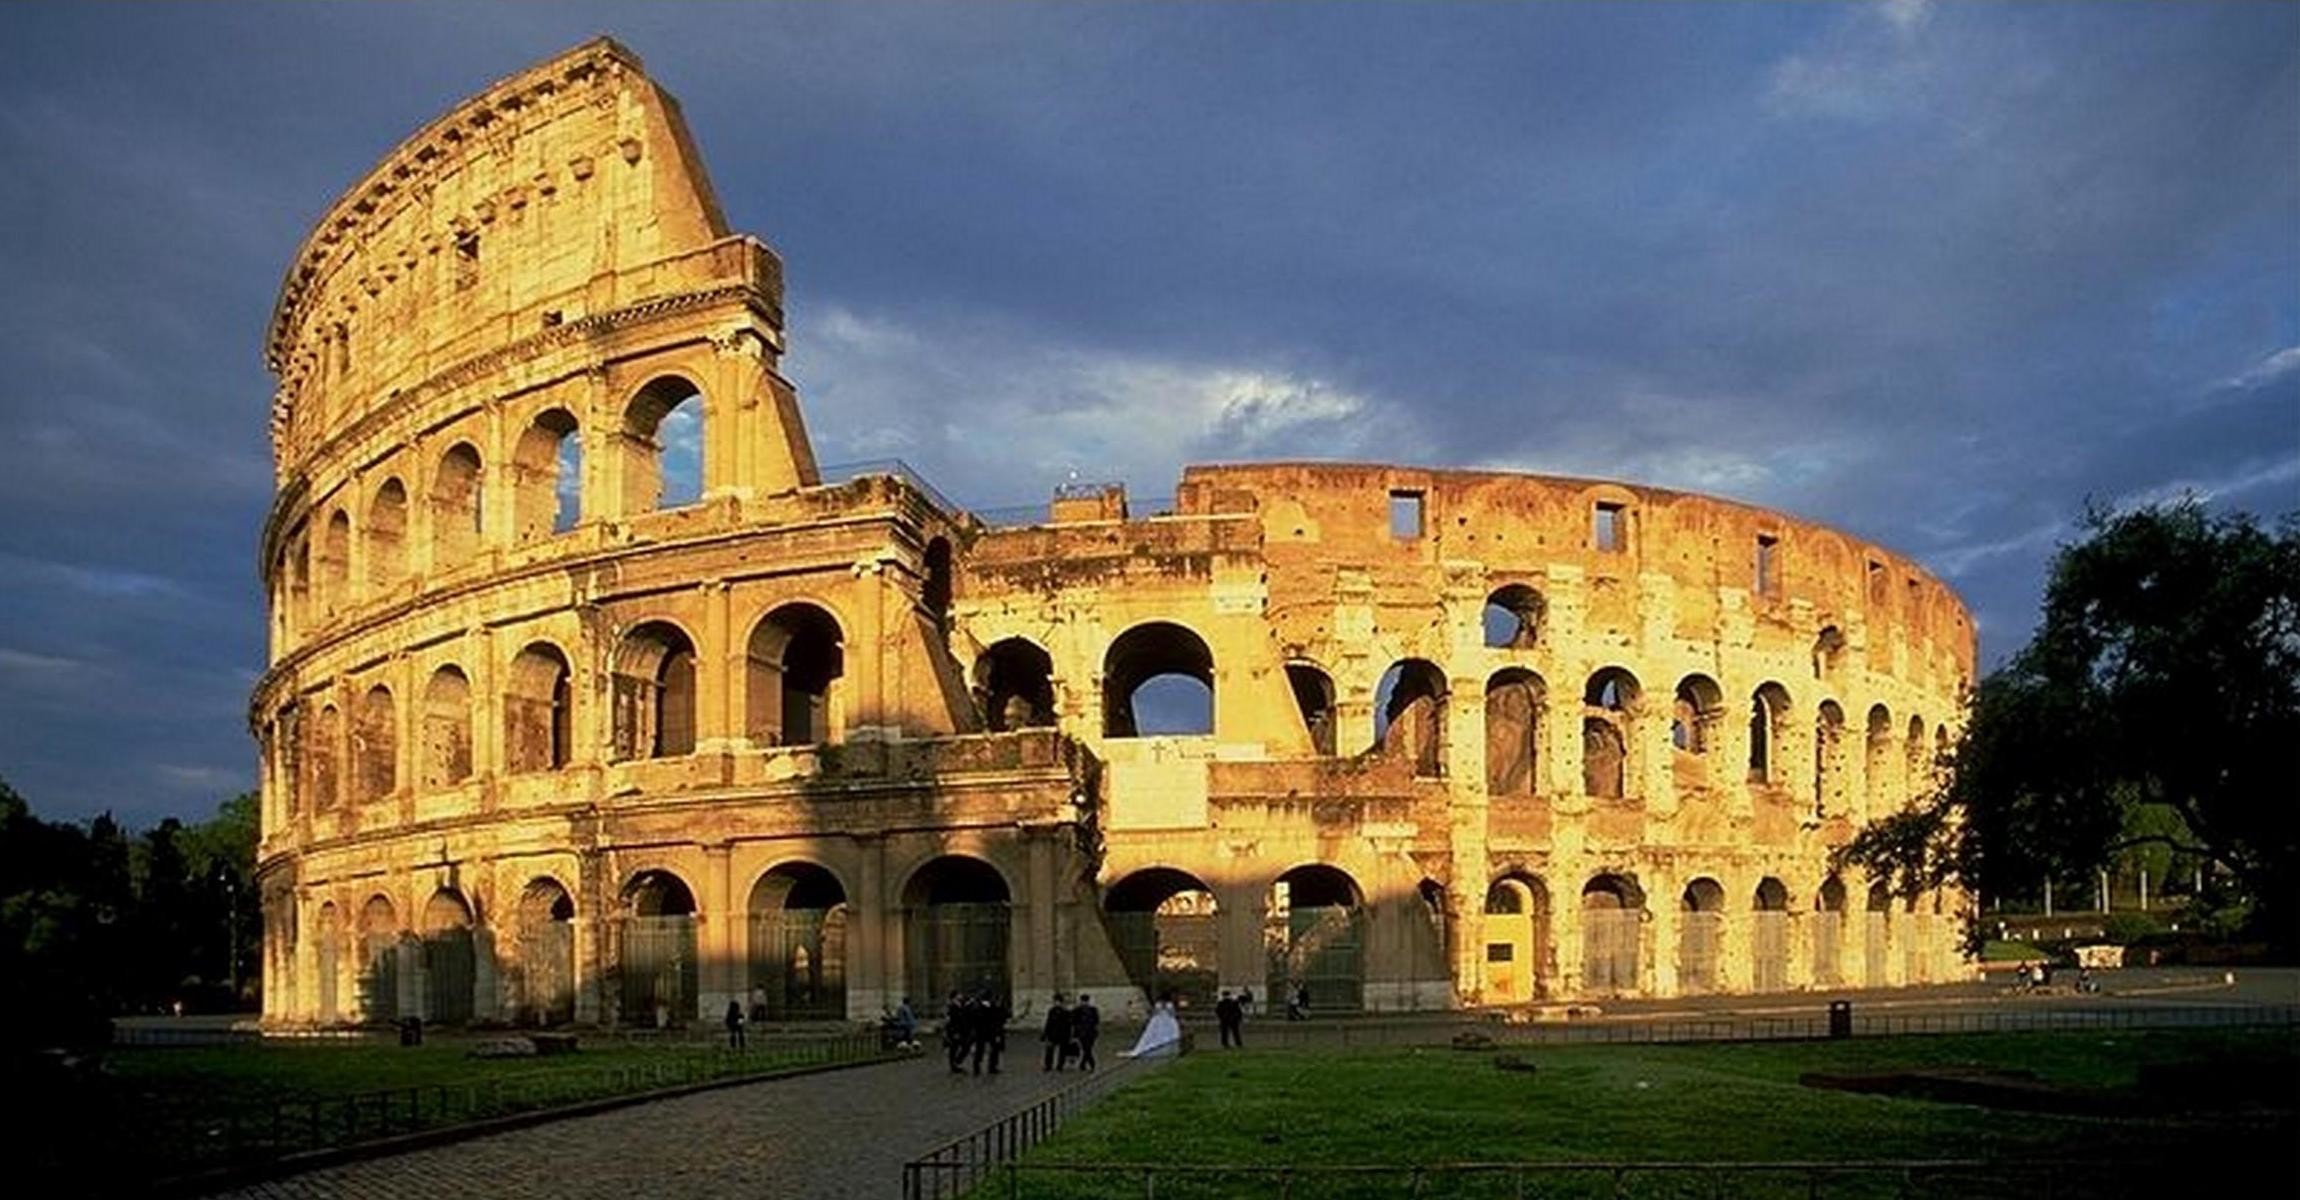 2300x1200 Colosseum In Rome